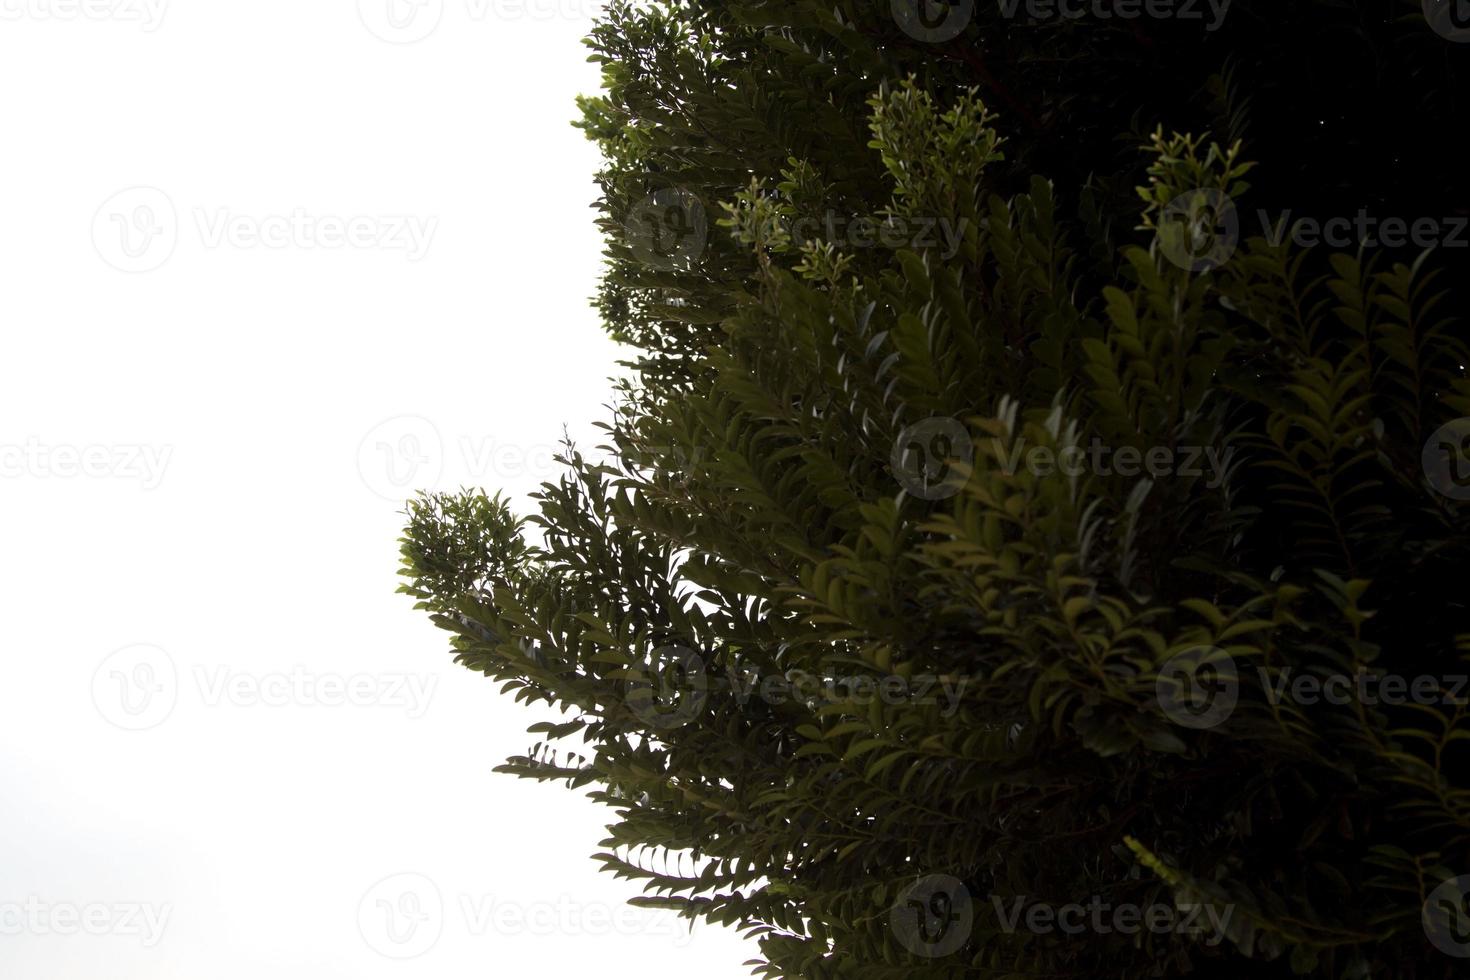 terminalia ivorensis- un árbol nativo de los bosques de África occidental. con muchas hojas pequeñas usadas para decorar jardines sombreados - sobre un fondo blanco foto